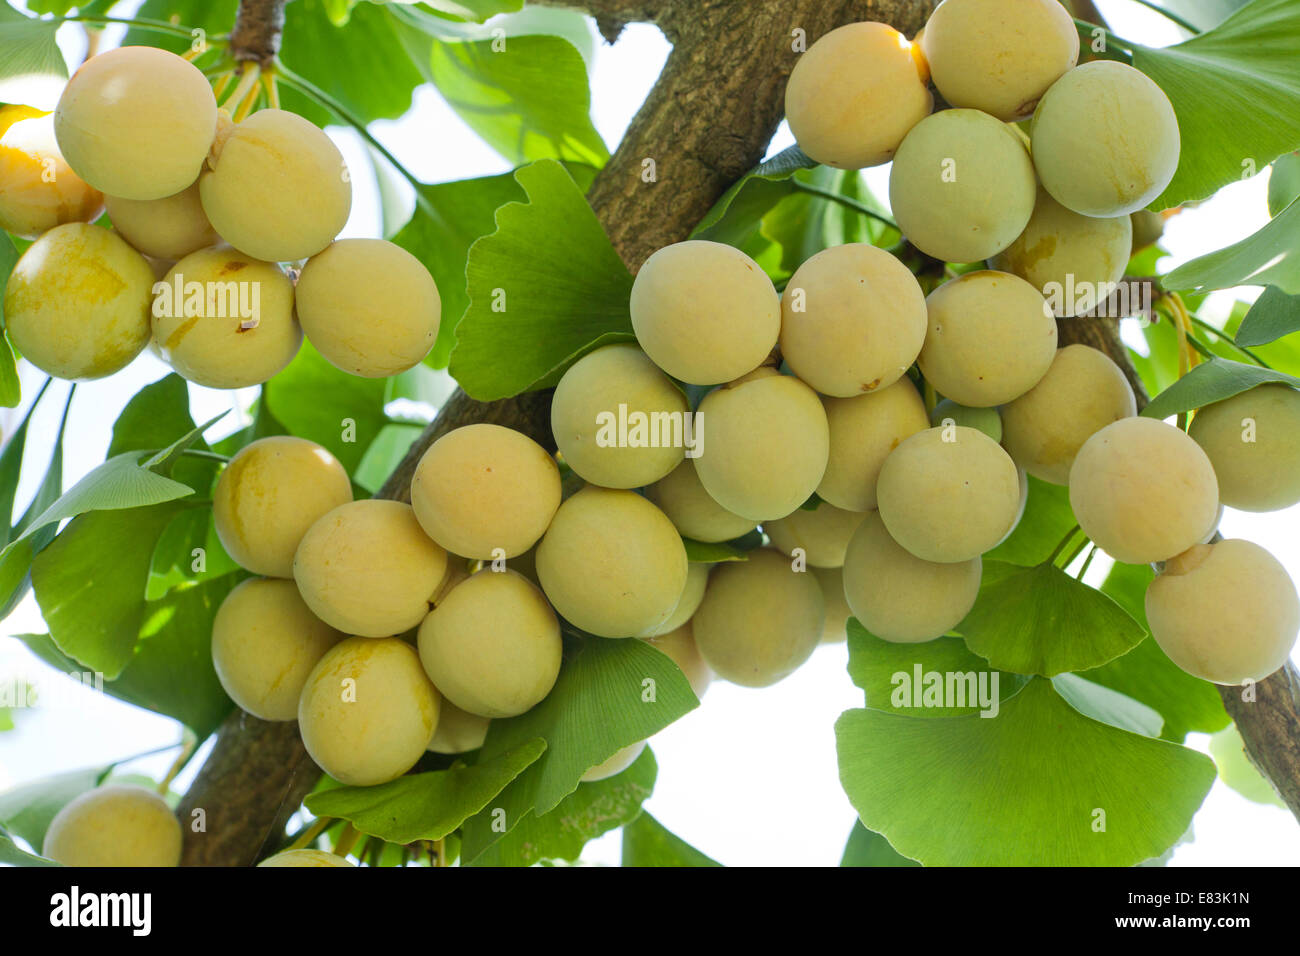 Óvulos maduros y hojas de ginkgo (Ginkgo biloba) - EE.UU. Foto de stock